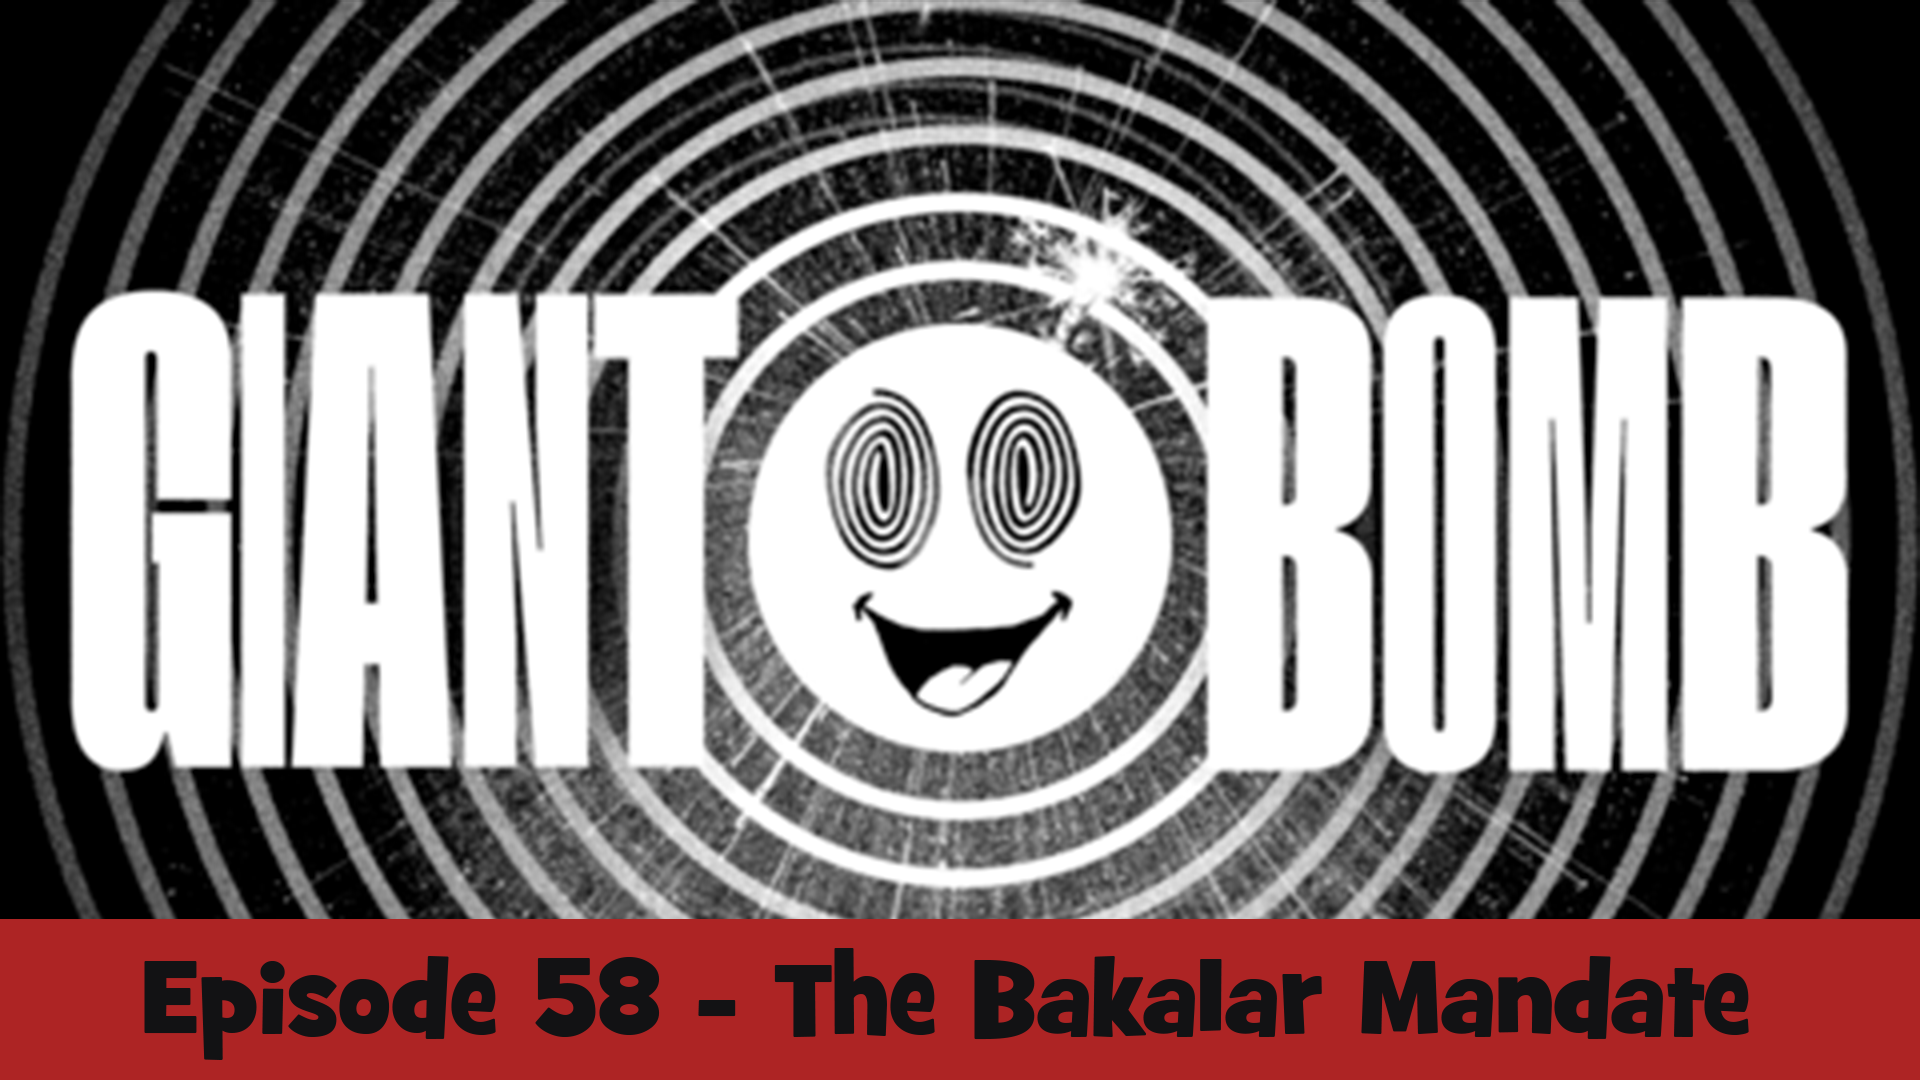 Episode 58 - The Bakalar Mandate